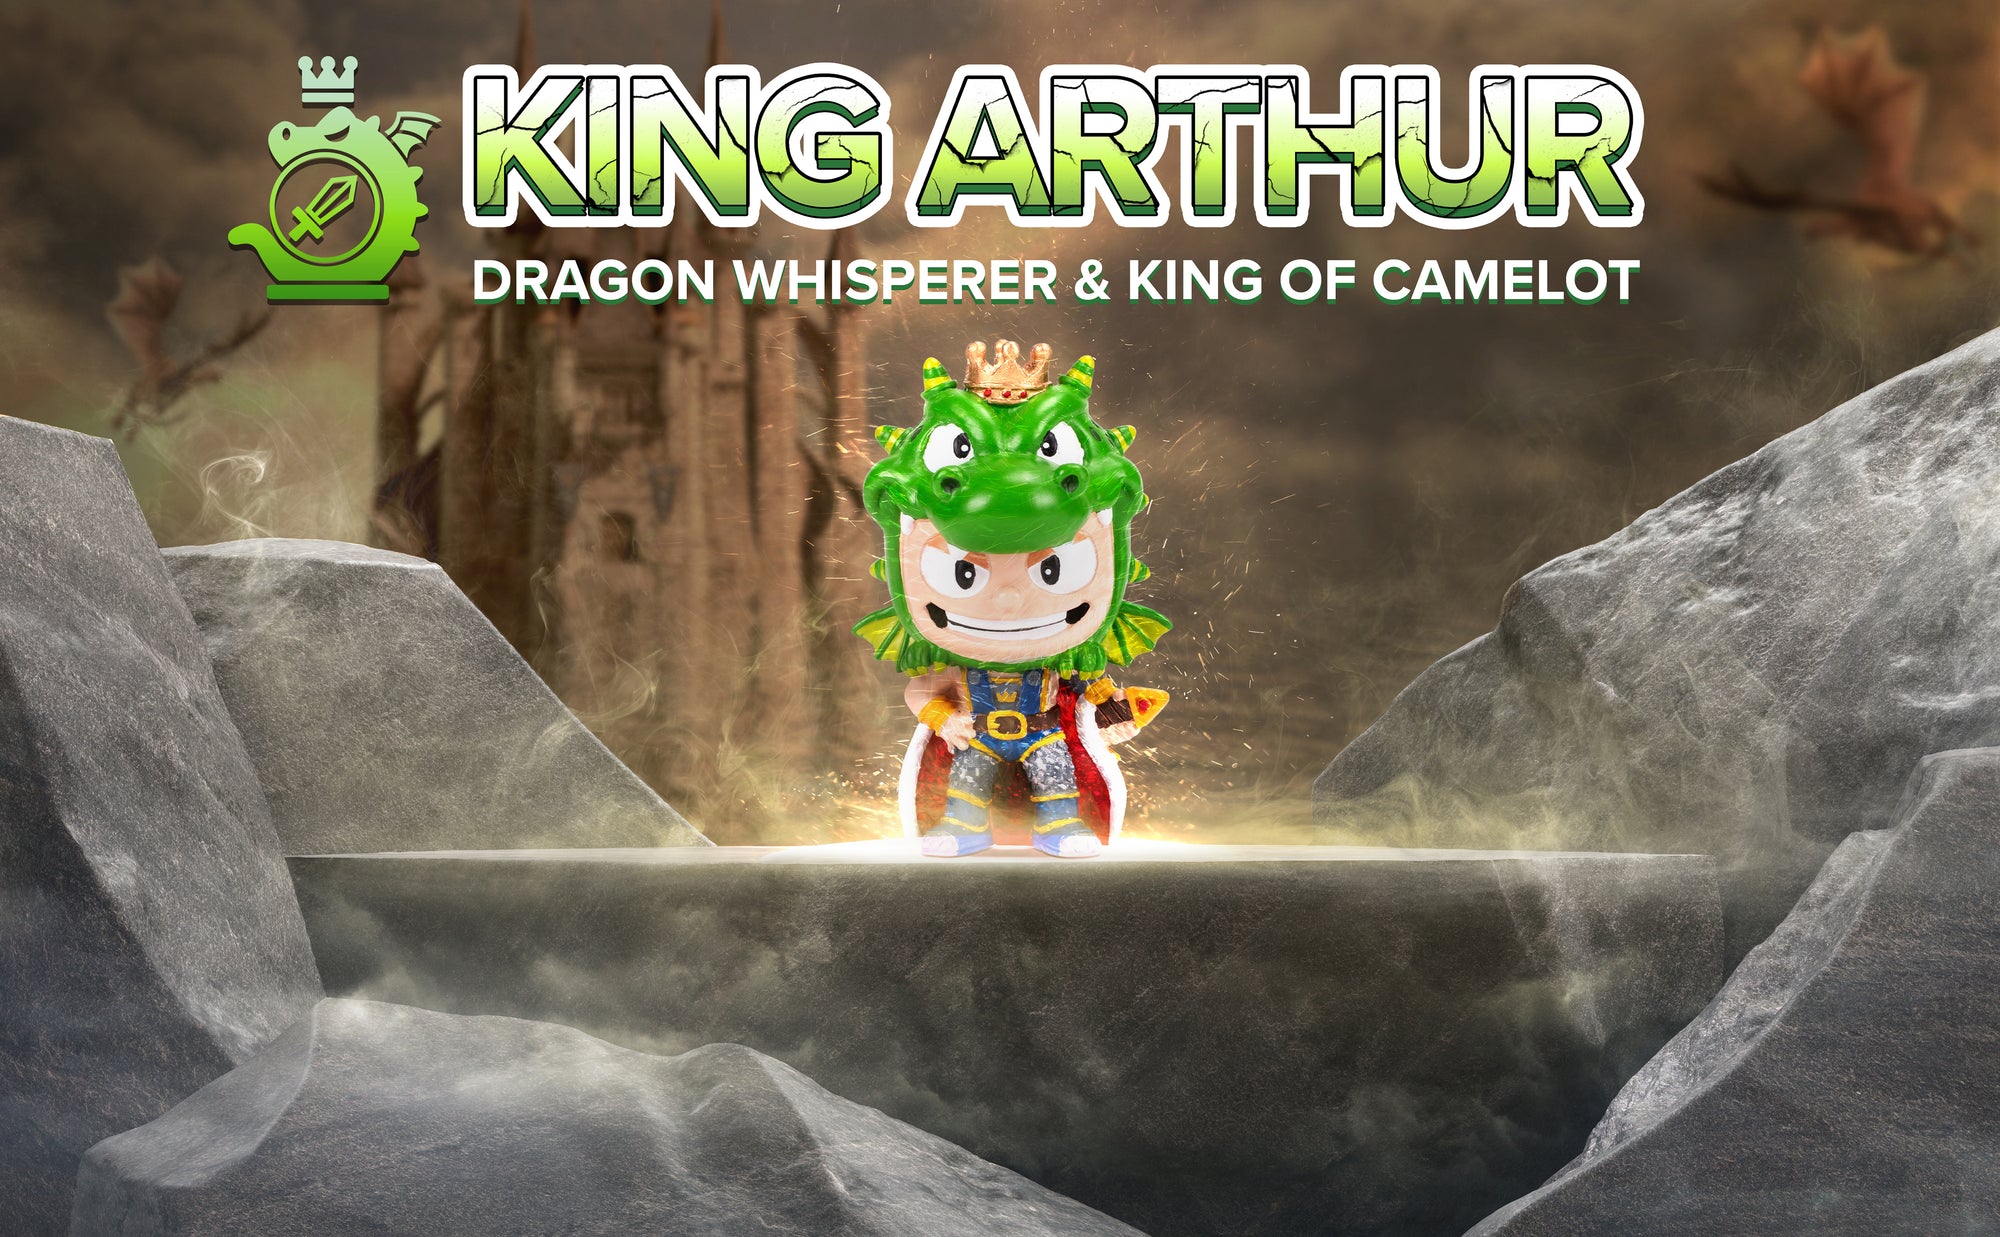 King Arthur Smashcraft collectible in realistic dragon castle, Camelot. Text "King Arthur, Dragon whisperer & King of Camelot" and Arthur's Dragon sword logo